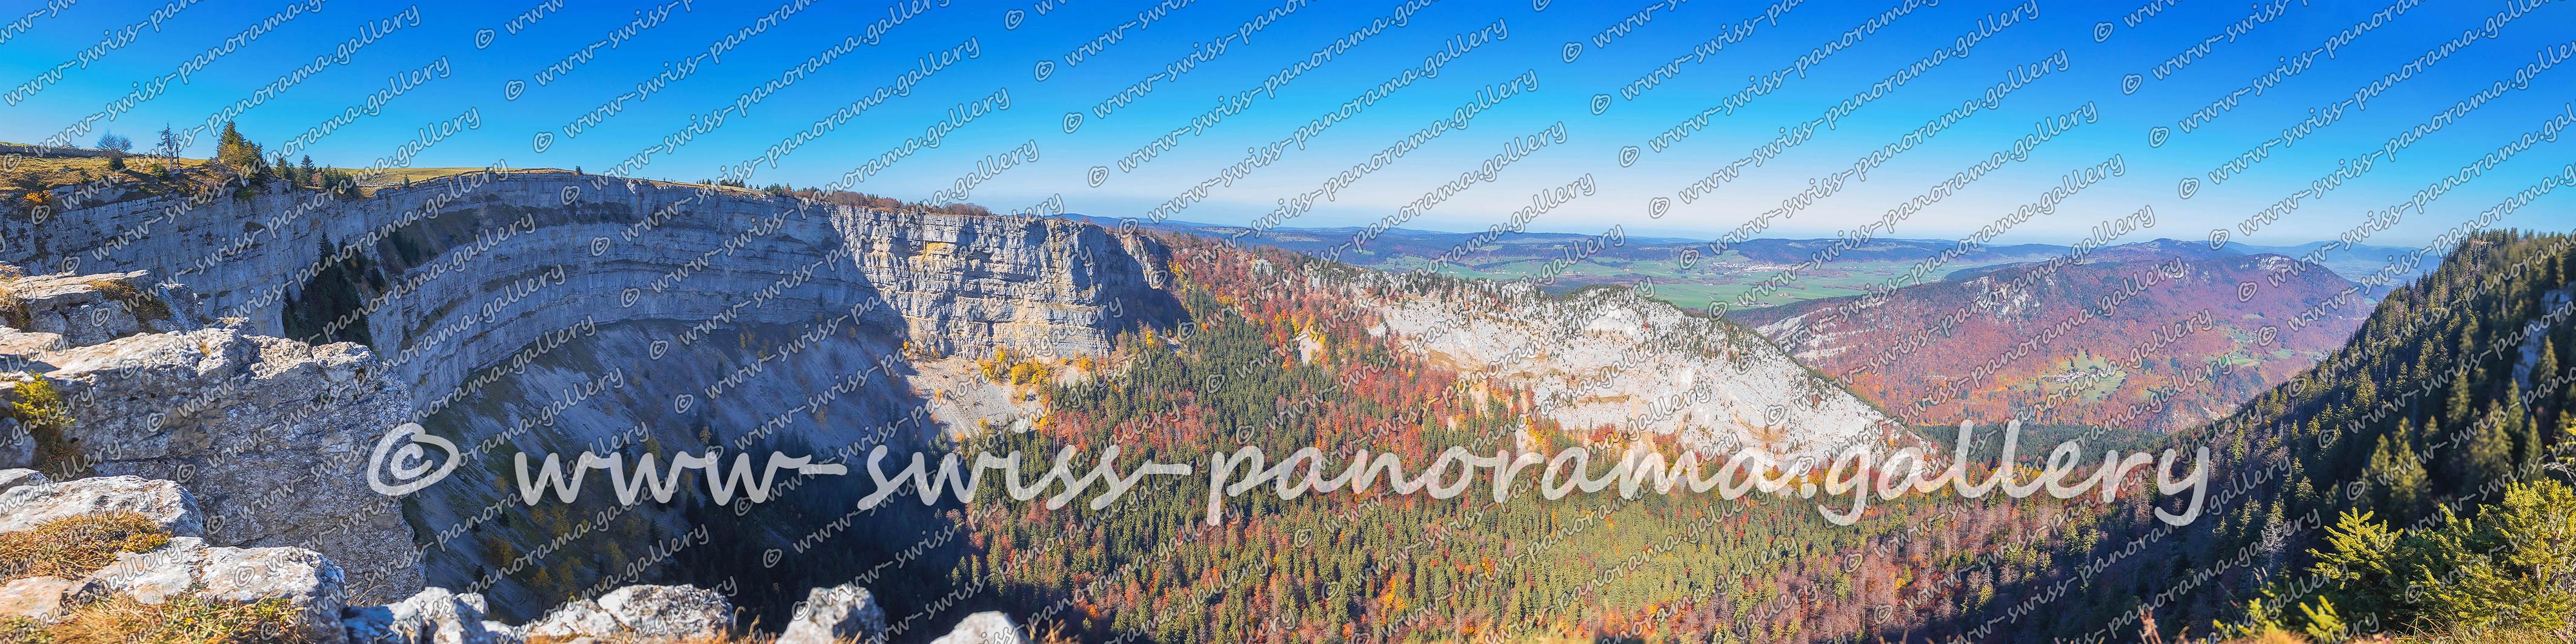 Swiss panorama Creux du Van swiss-panorama.gallery Schweizer Alpenpanorama